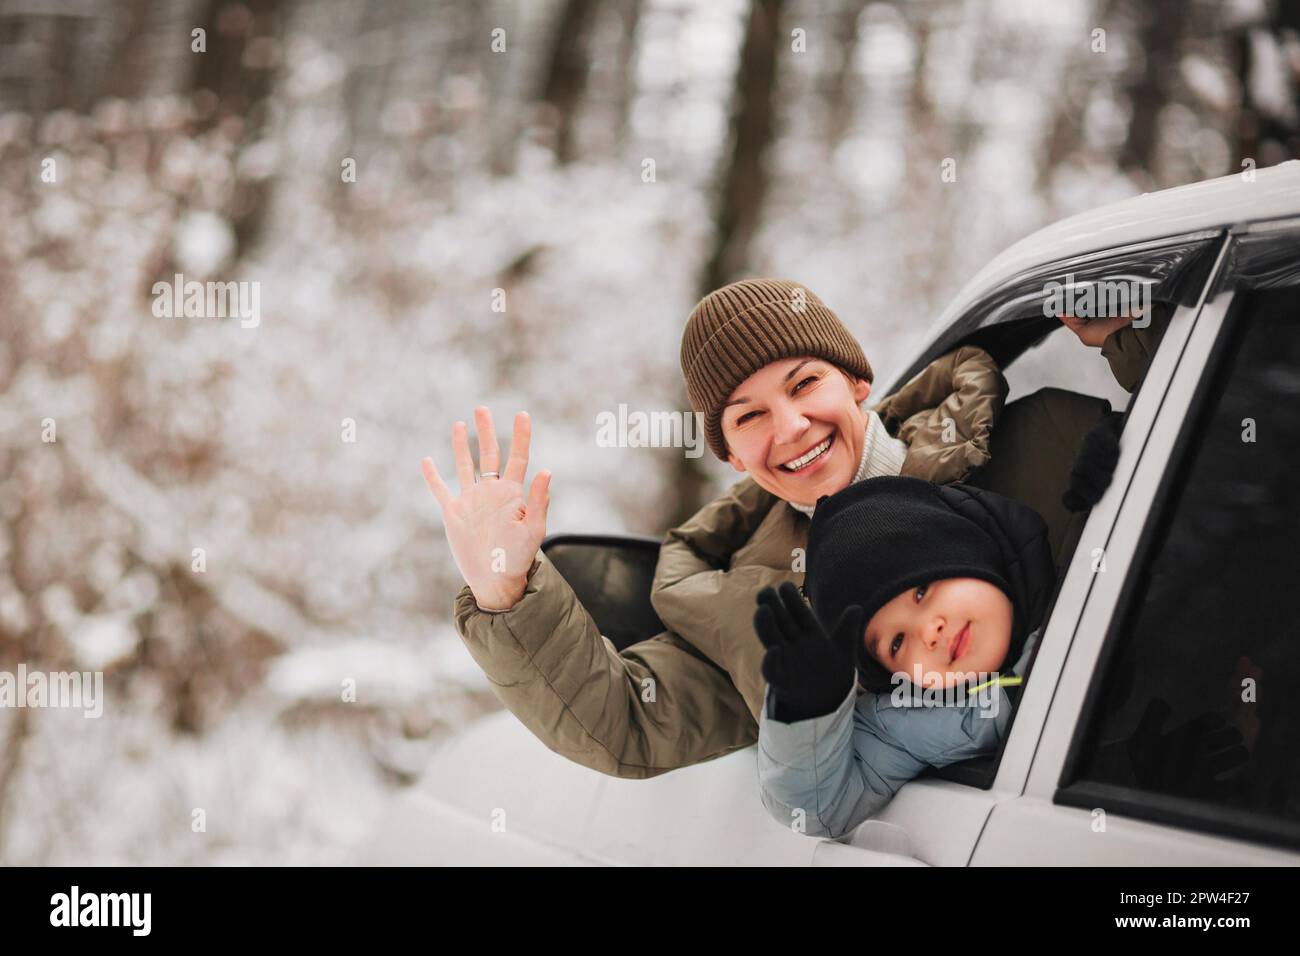 Fröhliche Erwachsene Frau und kleiner Junge in Oberbekleidung, die in die Kamera schauen und mit den Händen schwenken, während sie aus dem Fahrzeugfenster auf einen unscharfen Hintergrund schauen Stockfoto